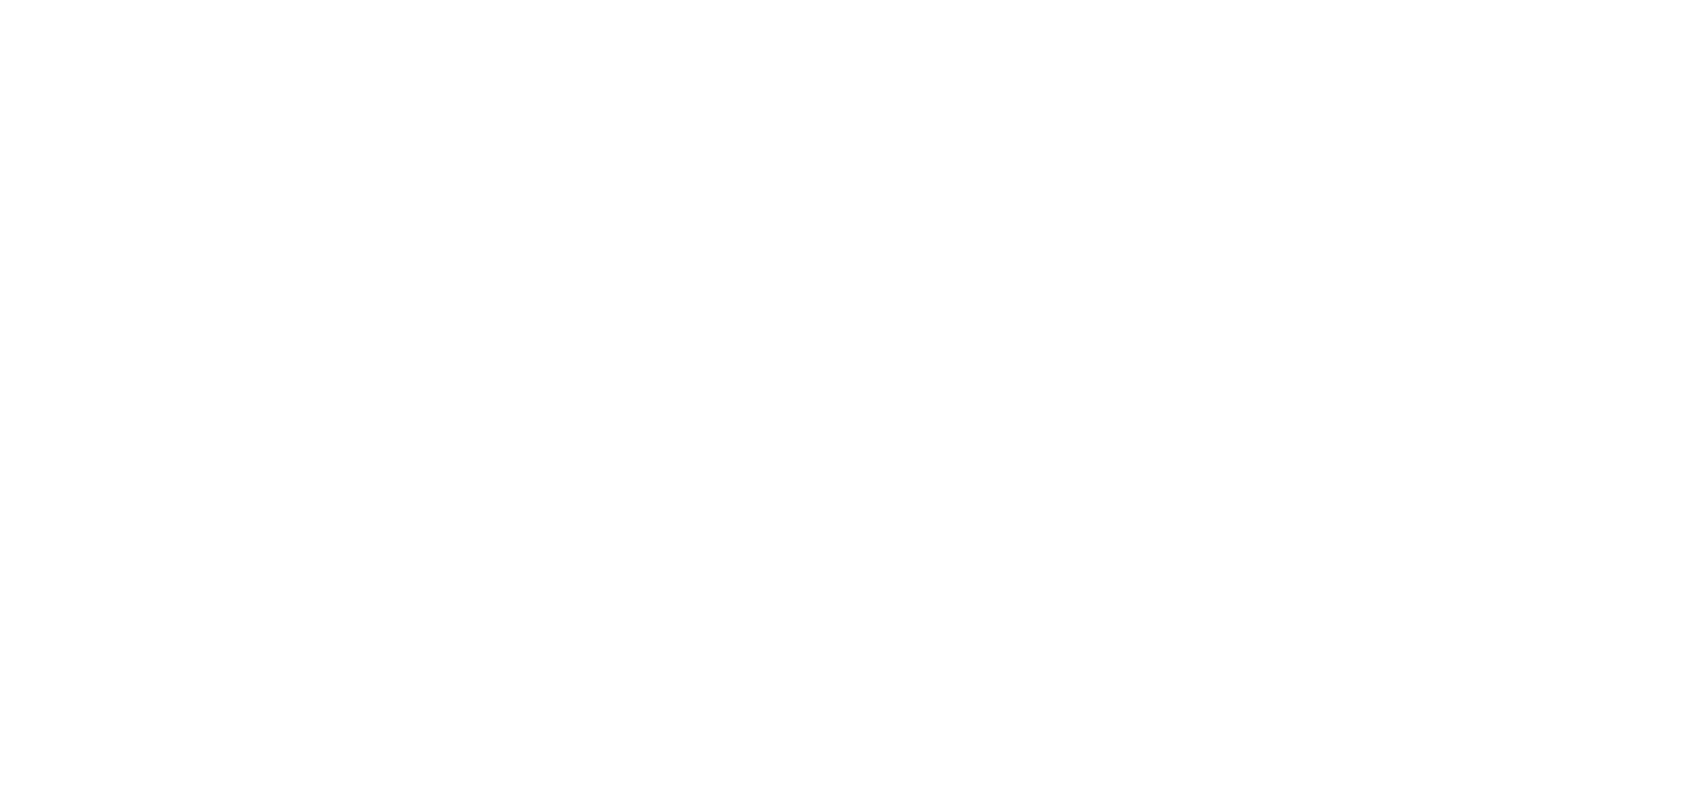 skeagis logo biele